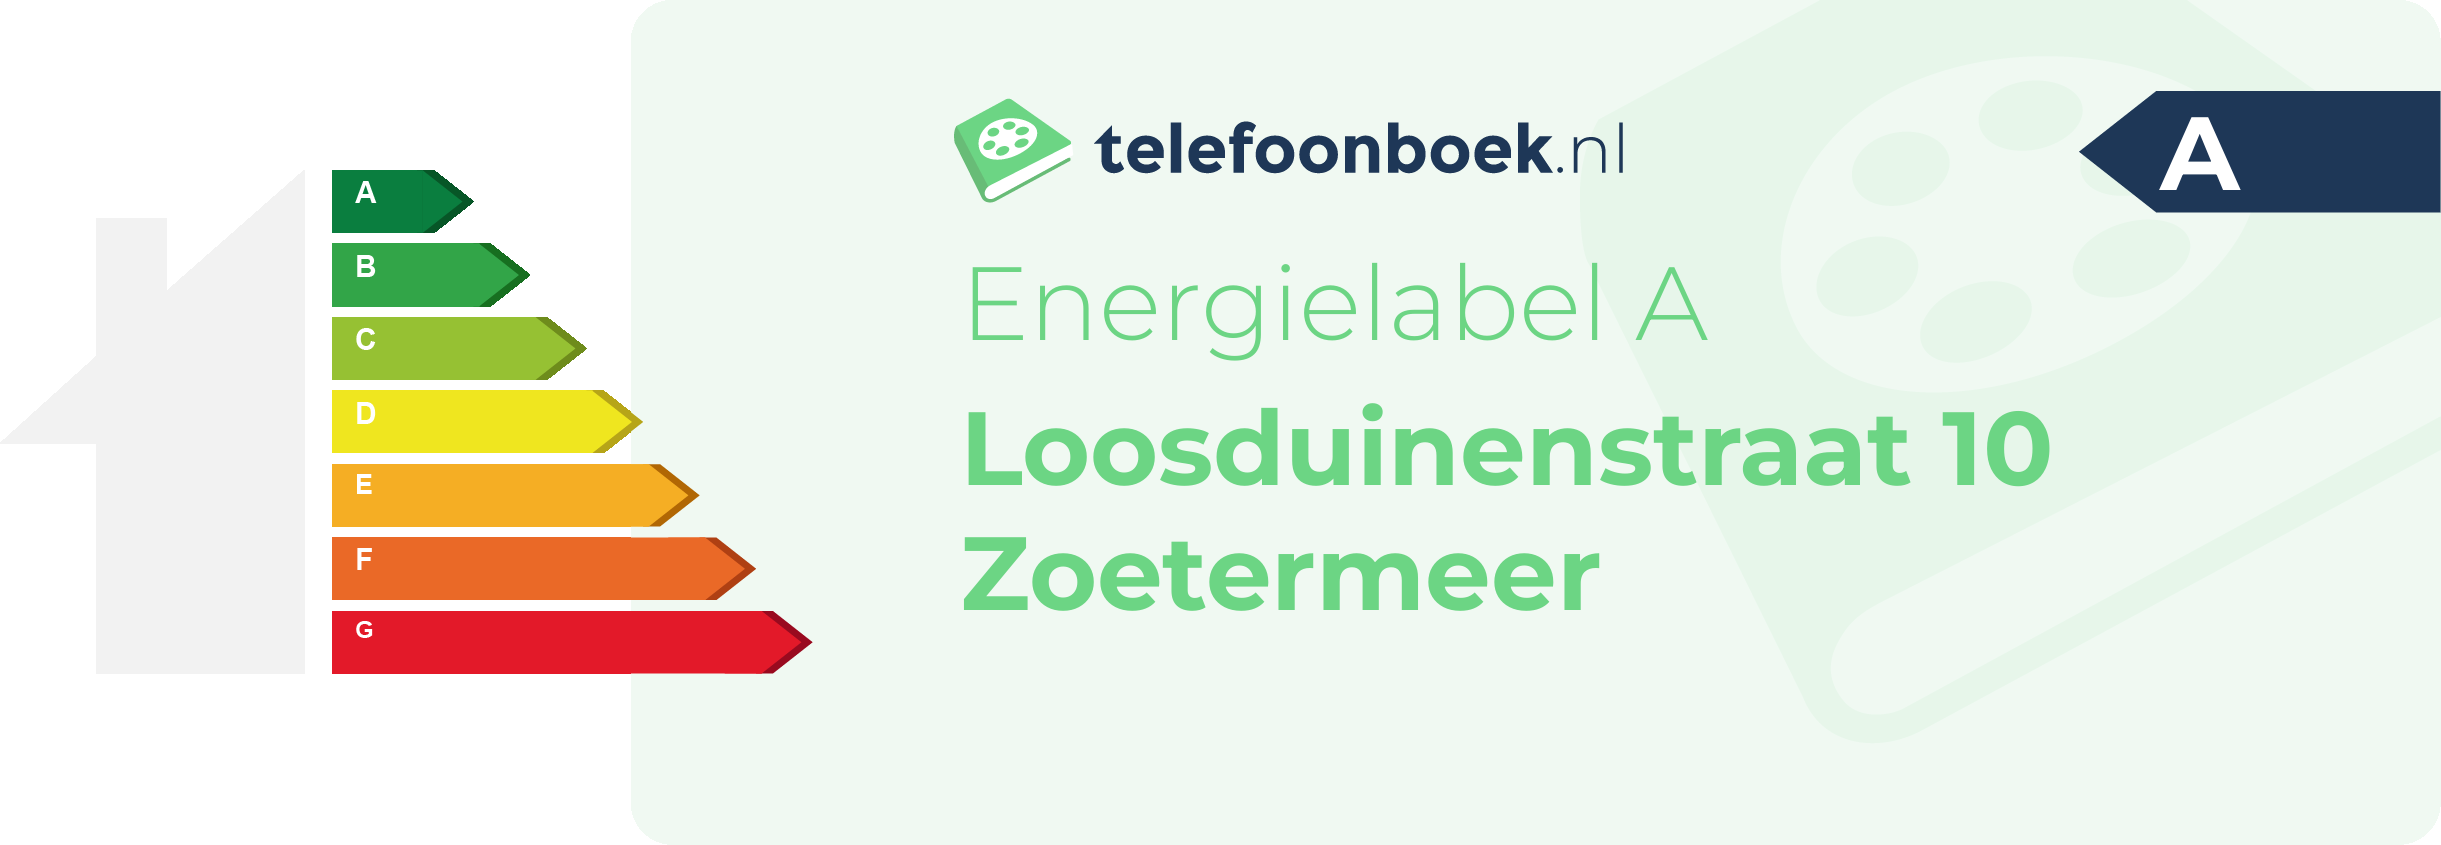 Energielabel Loosduinenstraat 10 Zoetermeer